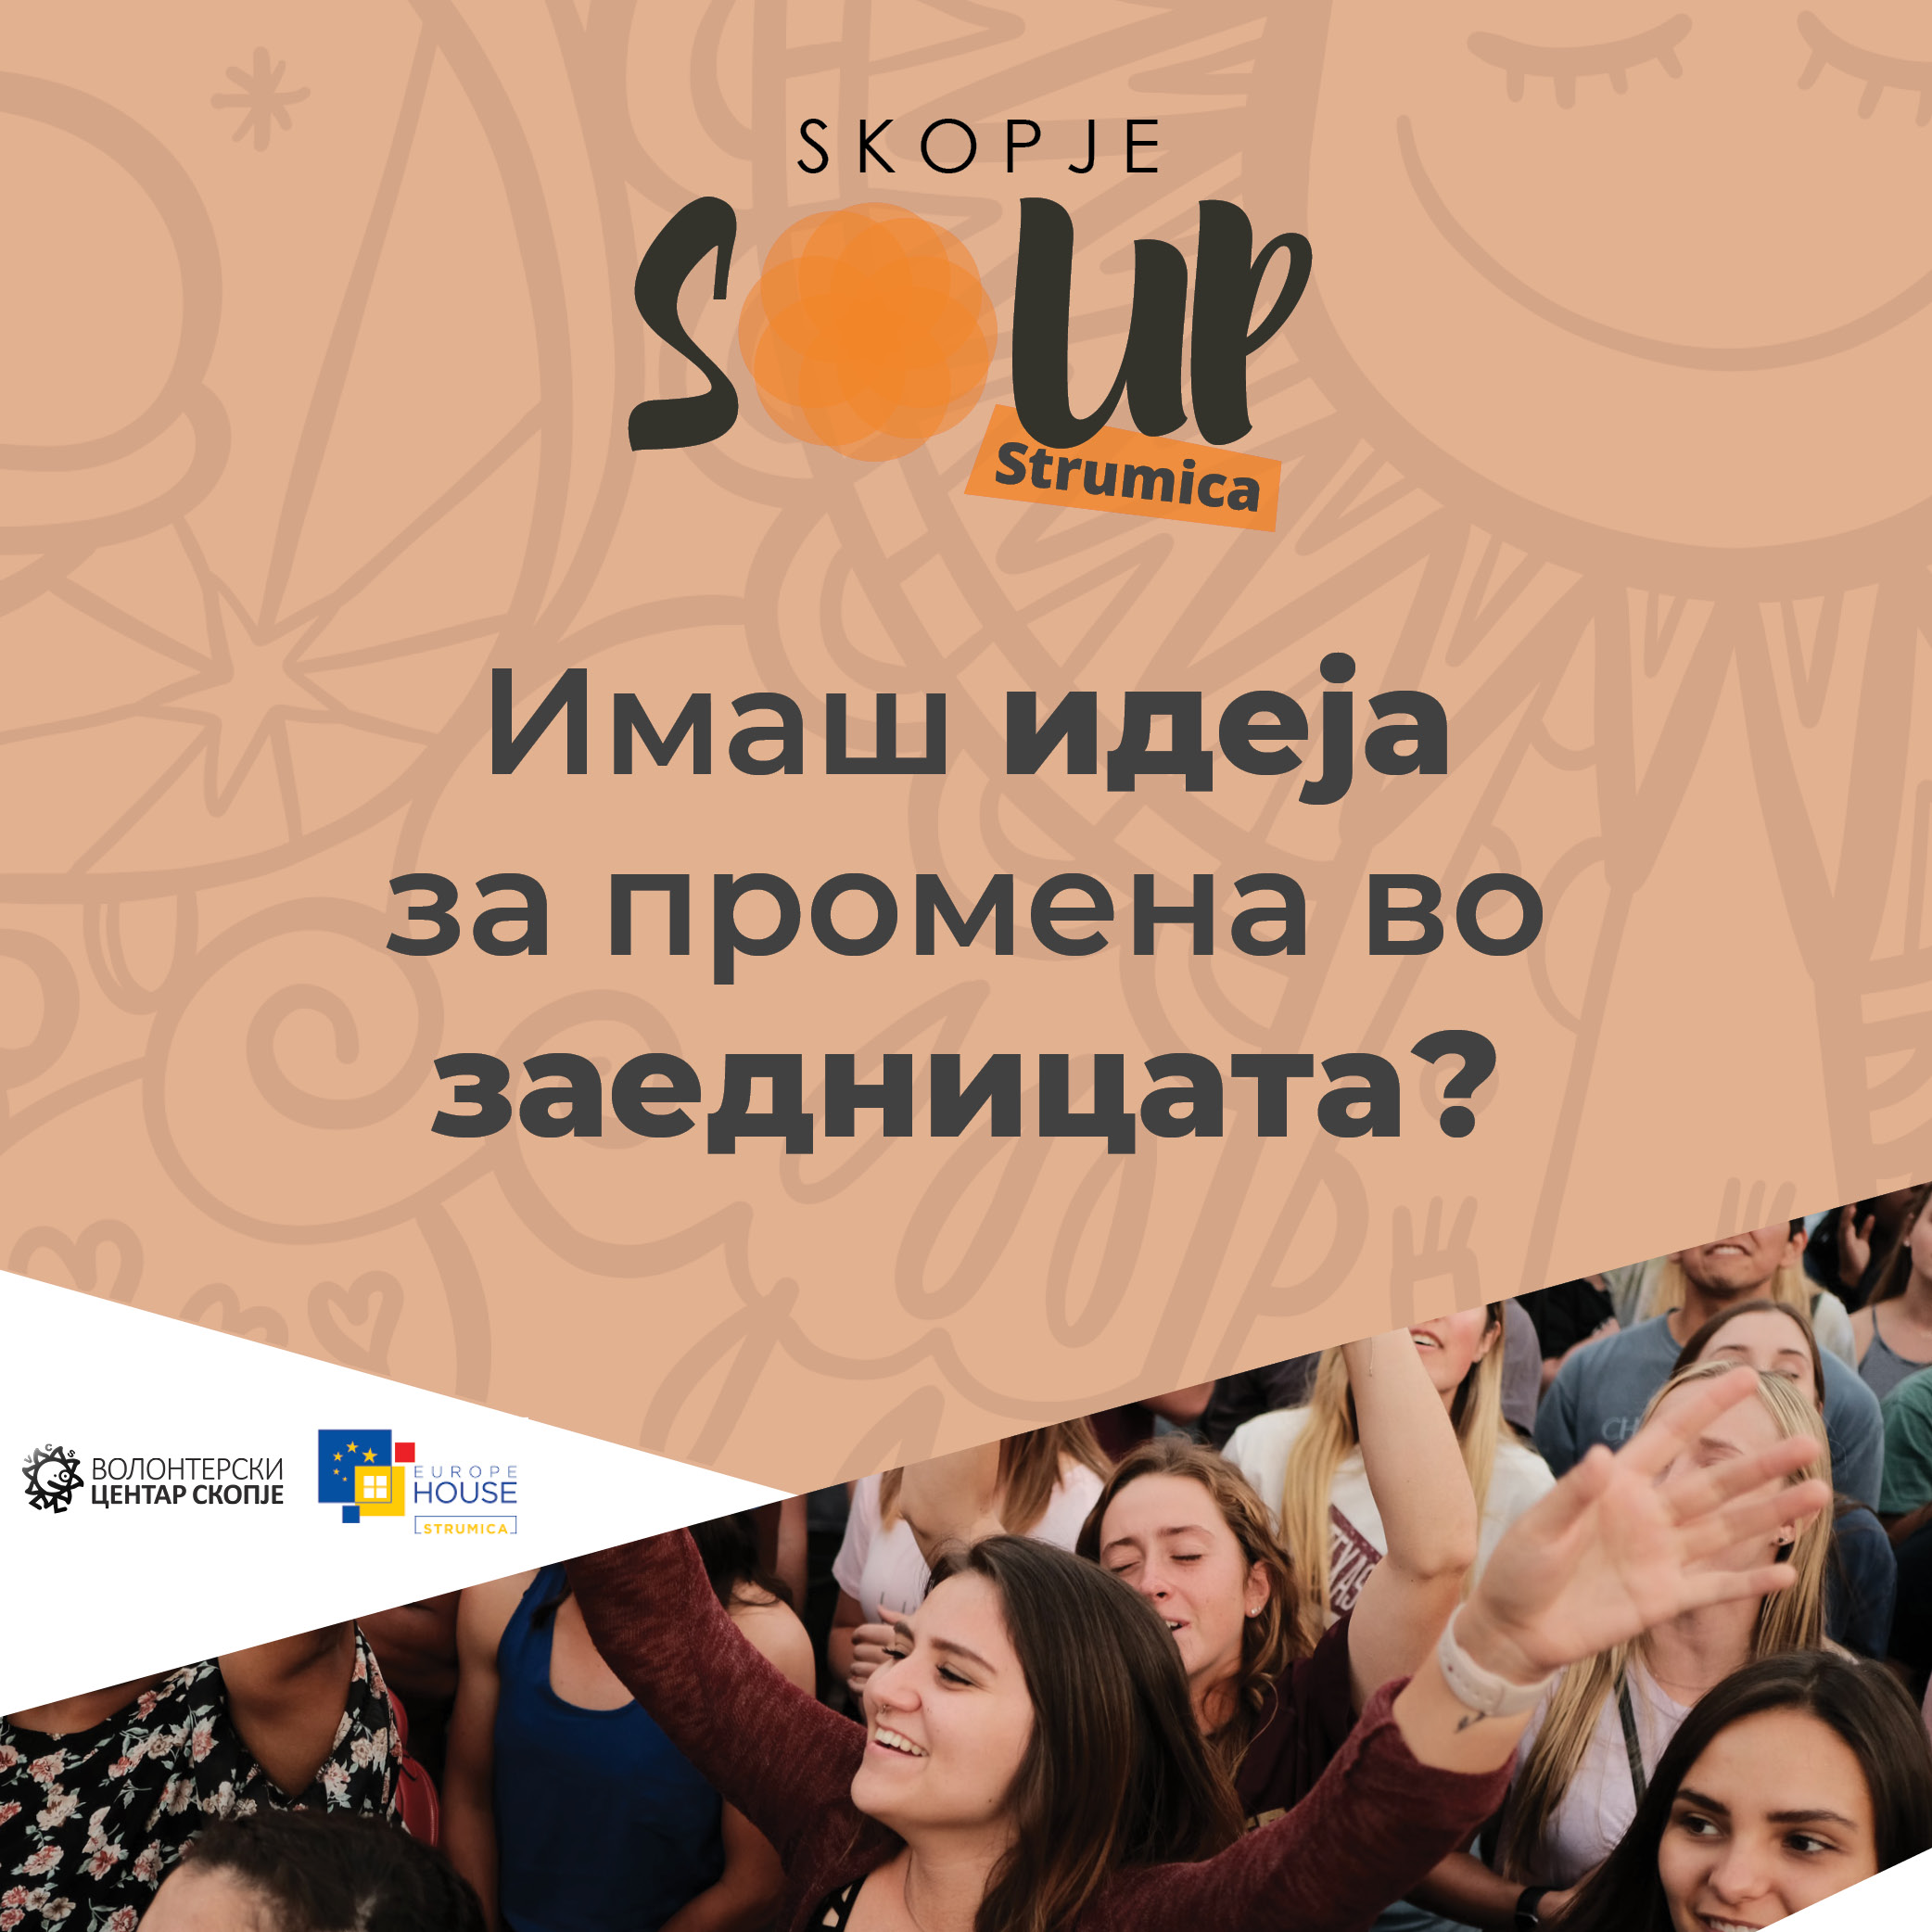 You are currently viewing Повик за идеи за создавање подобра заедница | Skopje SOUP